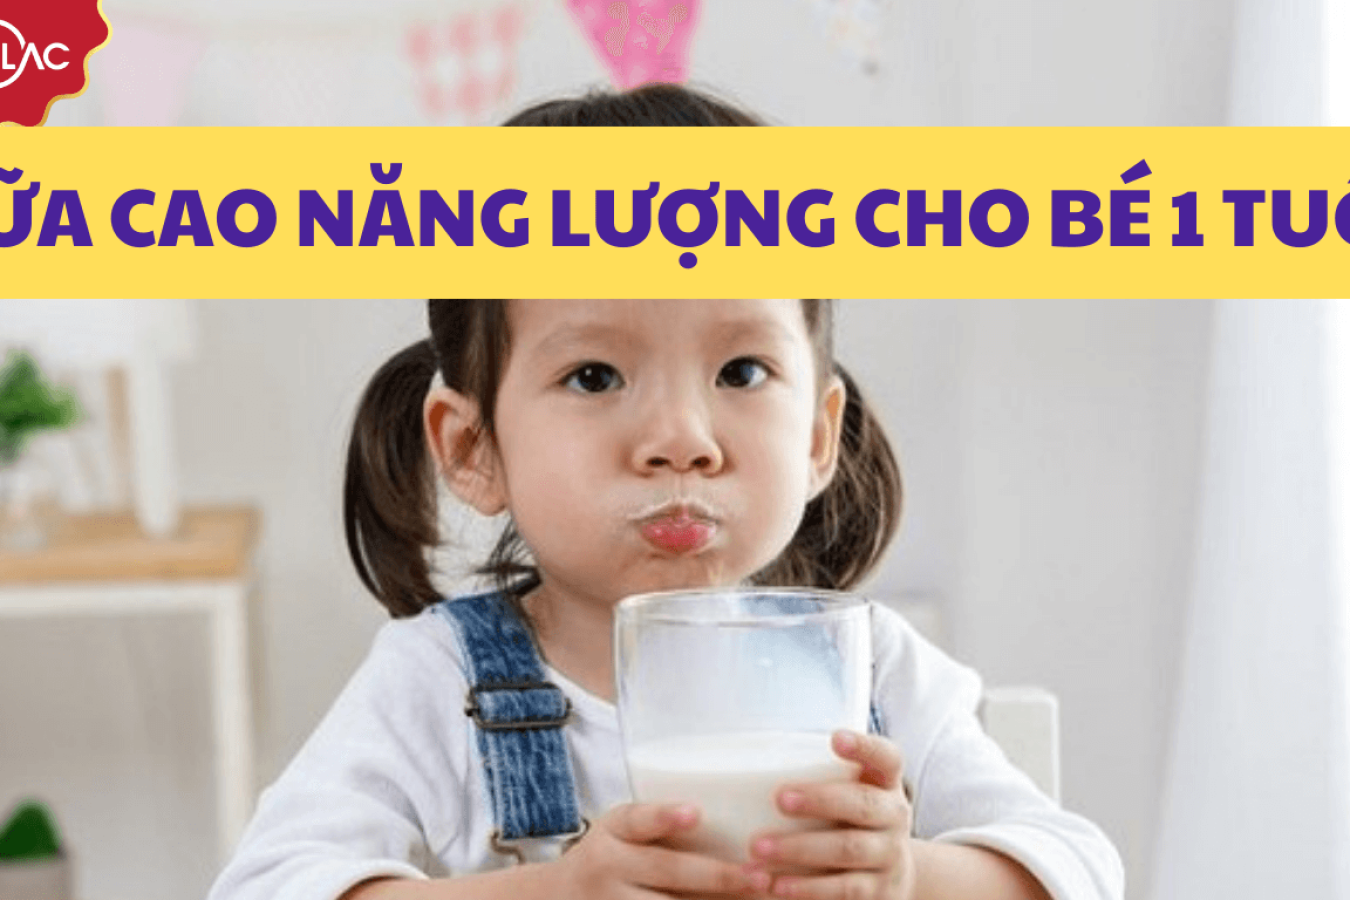 Tổng hợp 7 dòng sữa năng lượng cao cho bé 1 tuổi